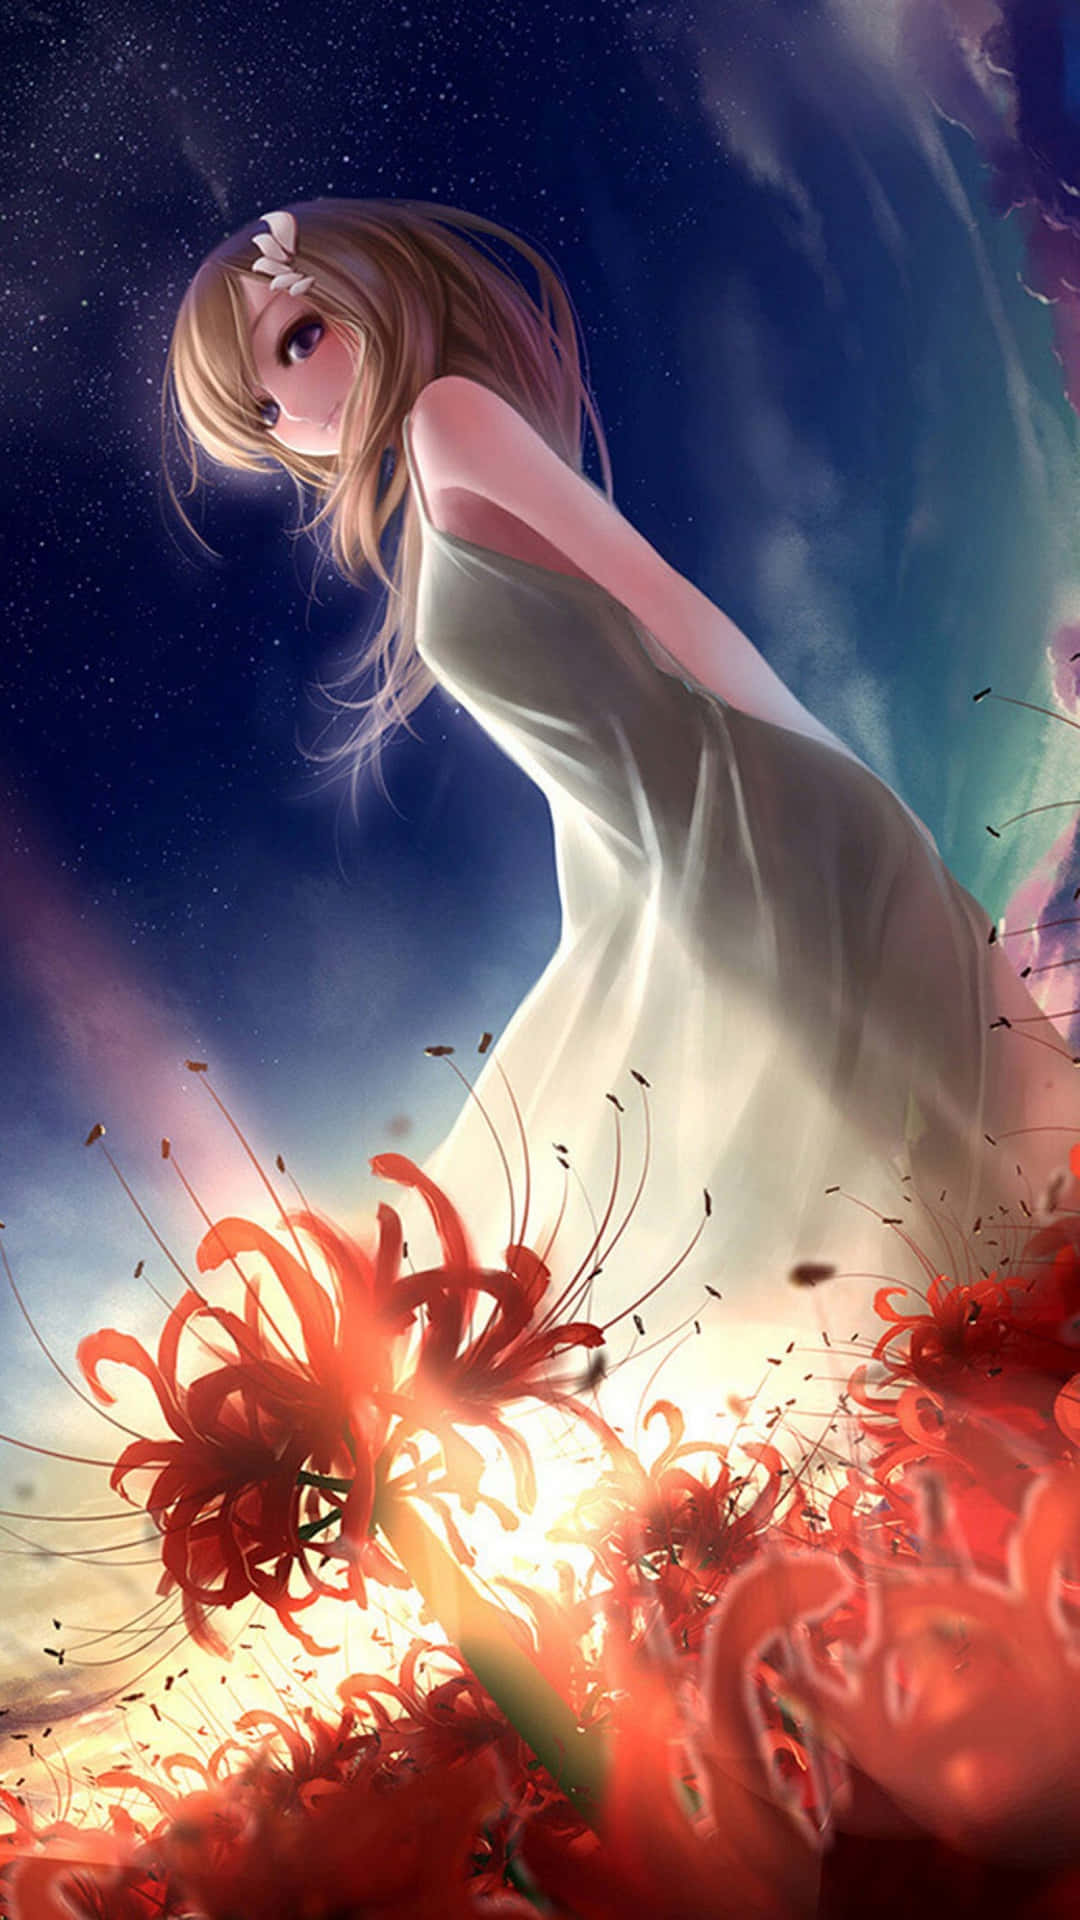 Tag din kærlighed for Anime til det næste niveau med denne smukke tapet. Wallpaper